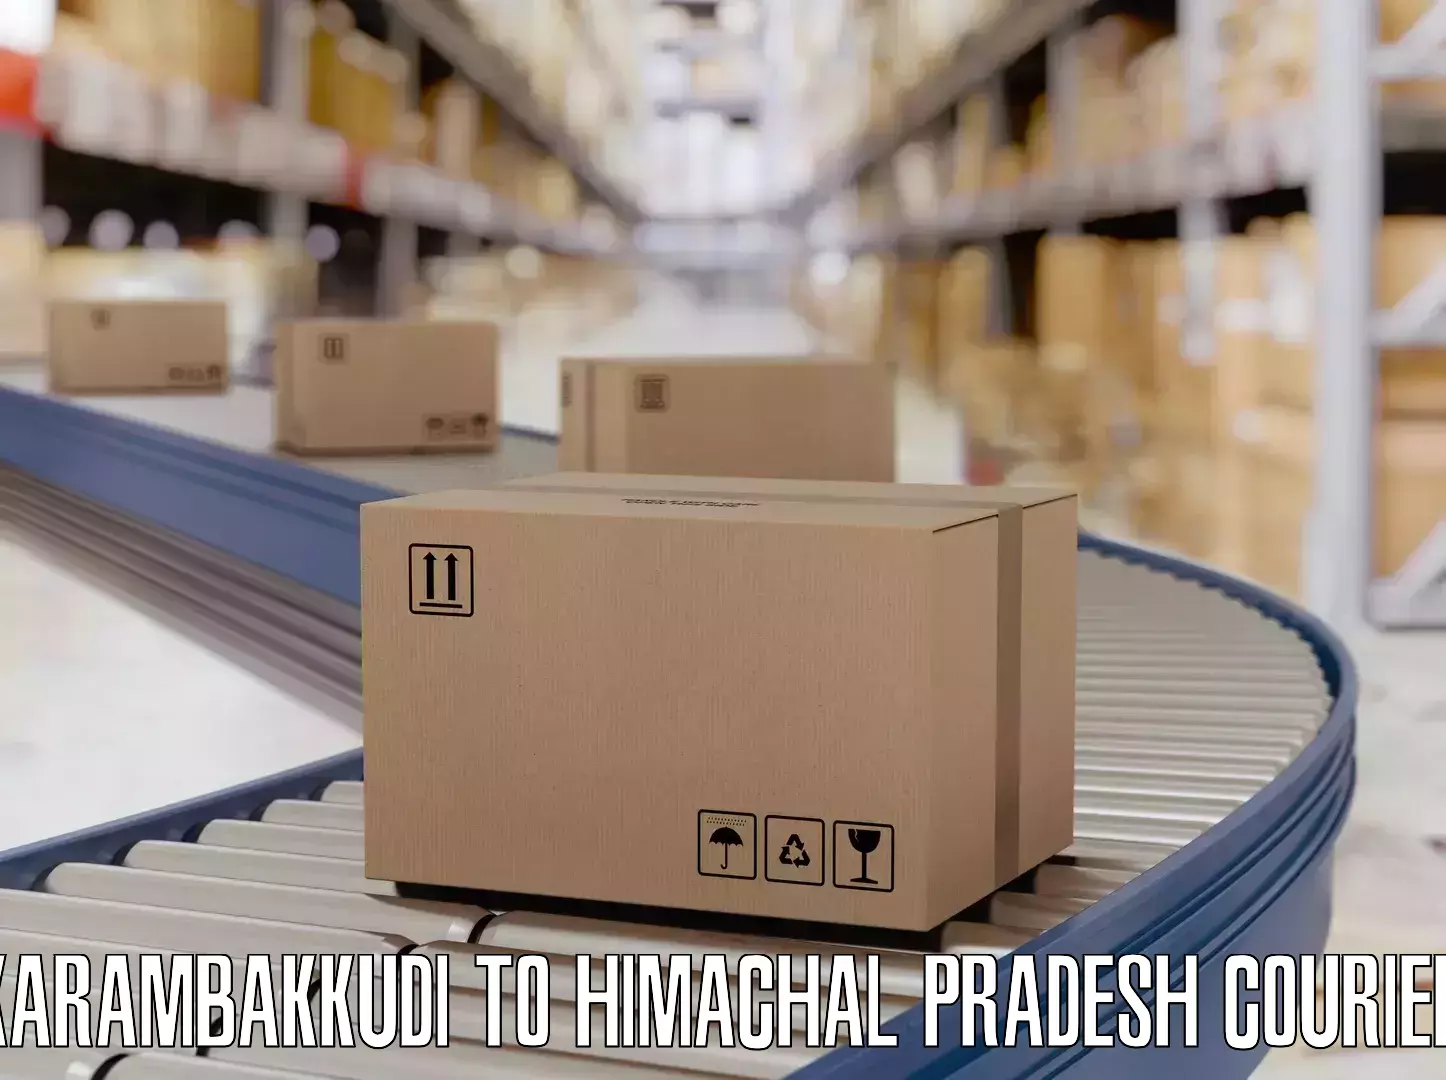 Luggage shipment strategy Karambakkudi to Jukhala